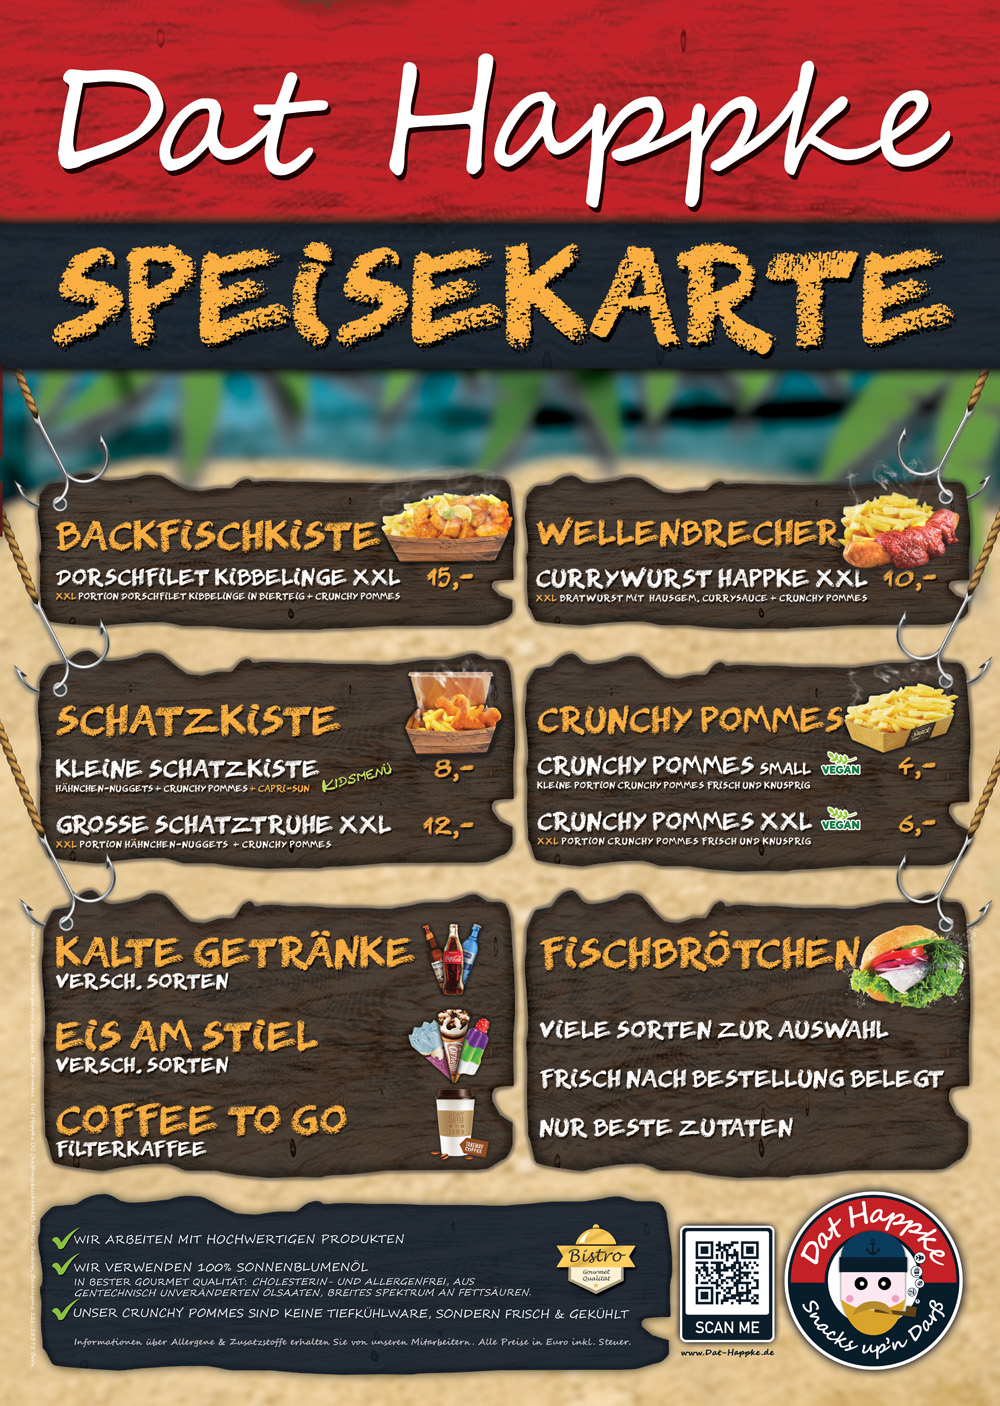 Speisekarte-Dat-Happke-Zingst-Strand-Foodtruck